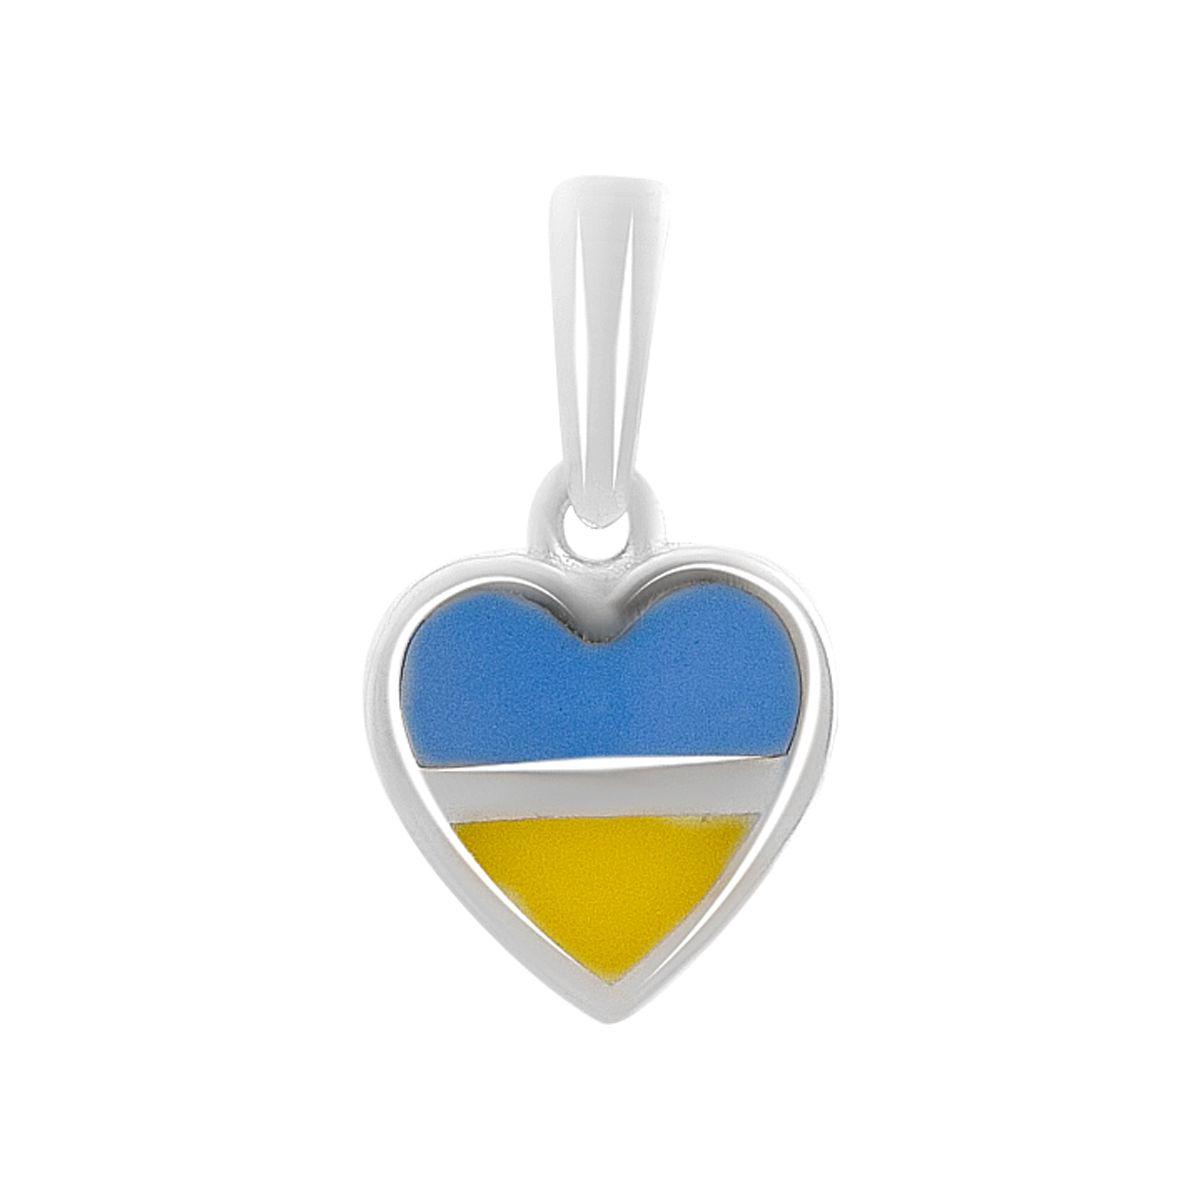 Патріотичний золотий кулон підвіска серце жовто-синій жіночий кулон з білого золота у формі серця з прапором